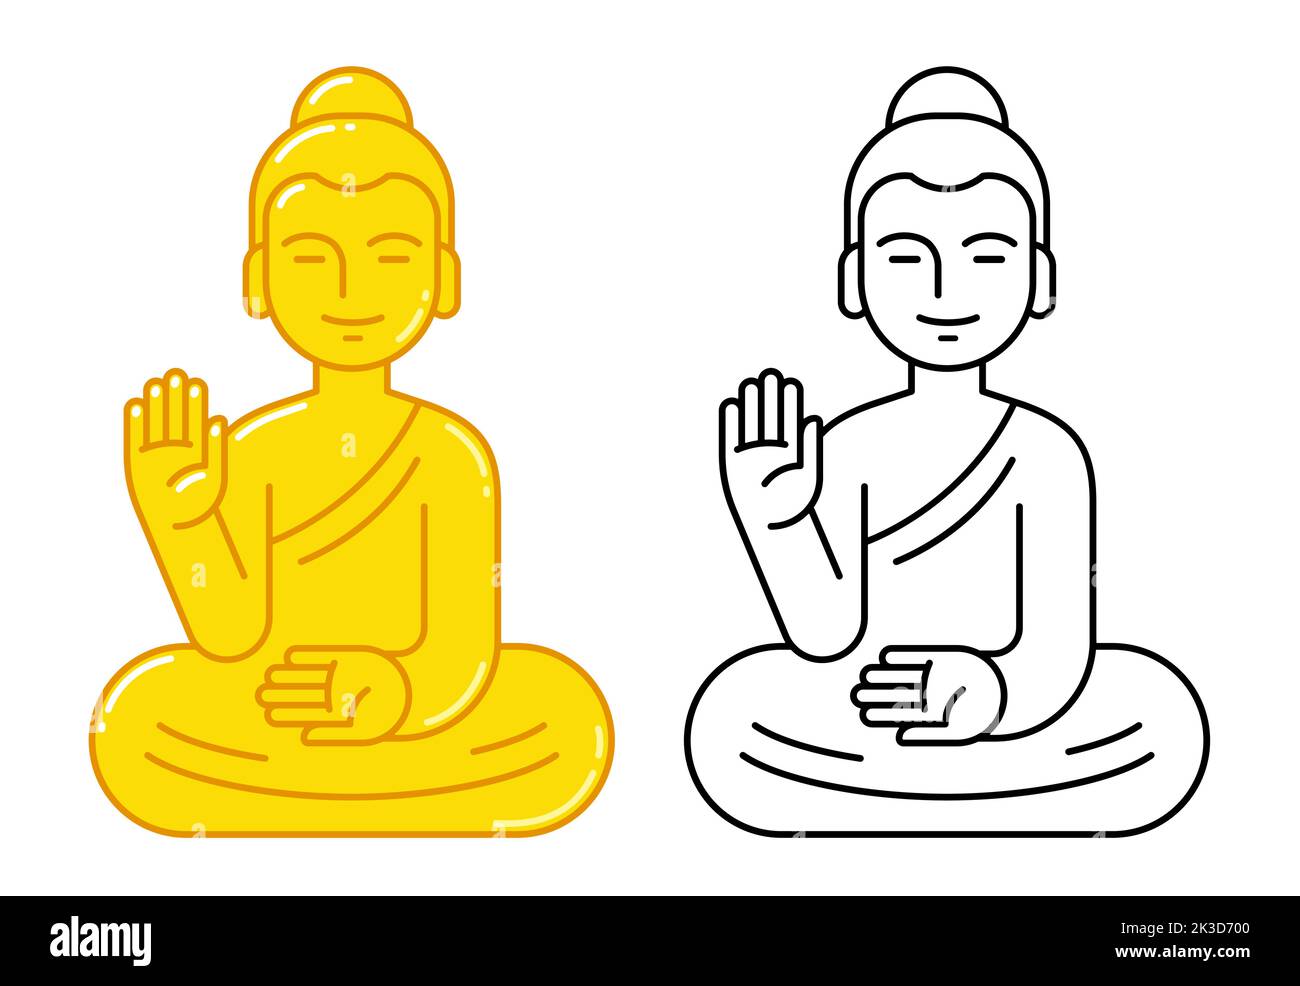 Buddha-Statue mit erhobener Hand, einfache geometrische Ikone. Goldene Farbe und schwarz-weiße Linienkunst. Buddhismus Religion Symbol. Stock Vektor